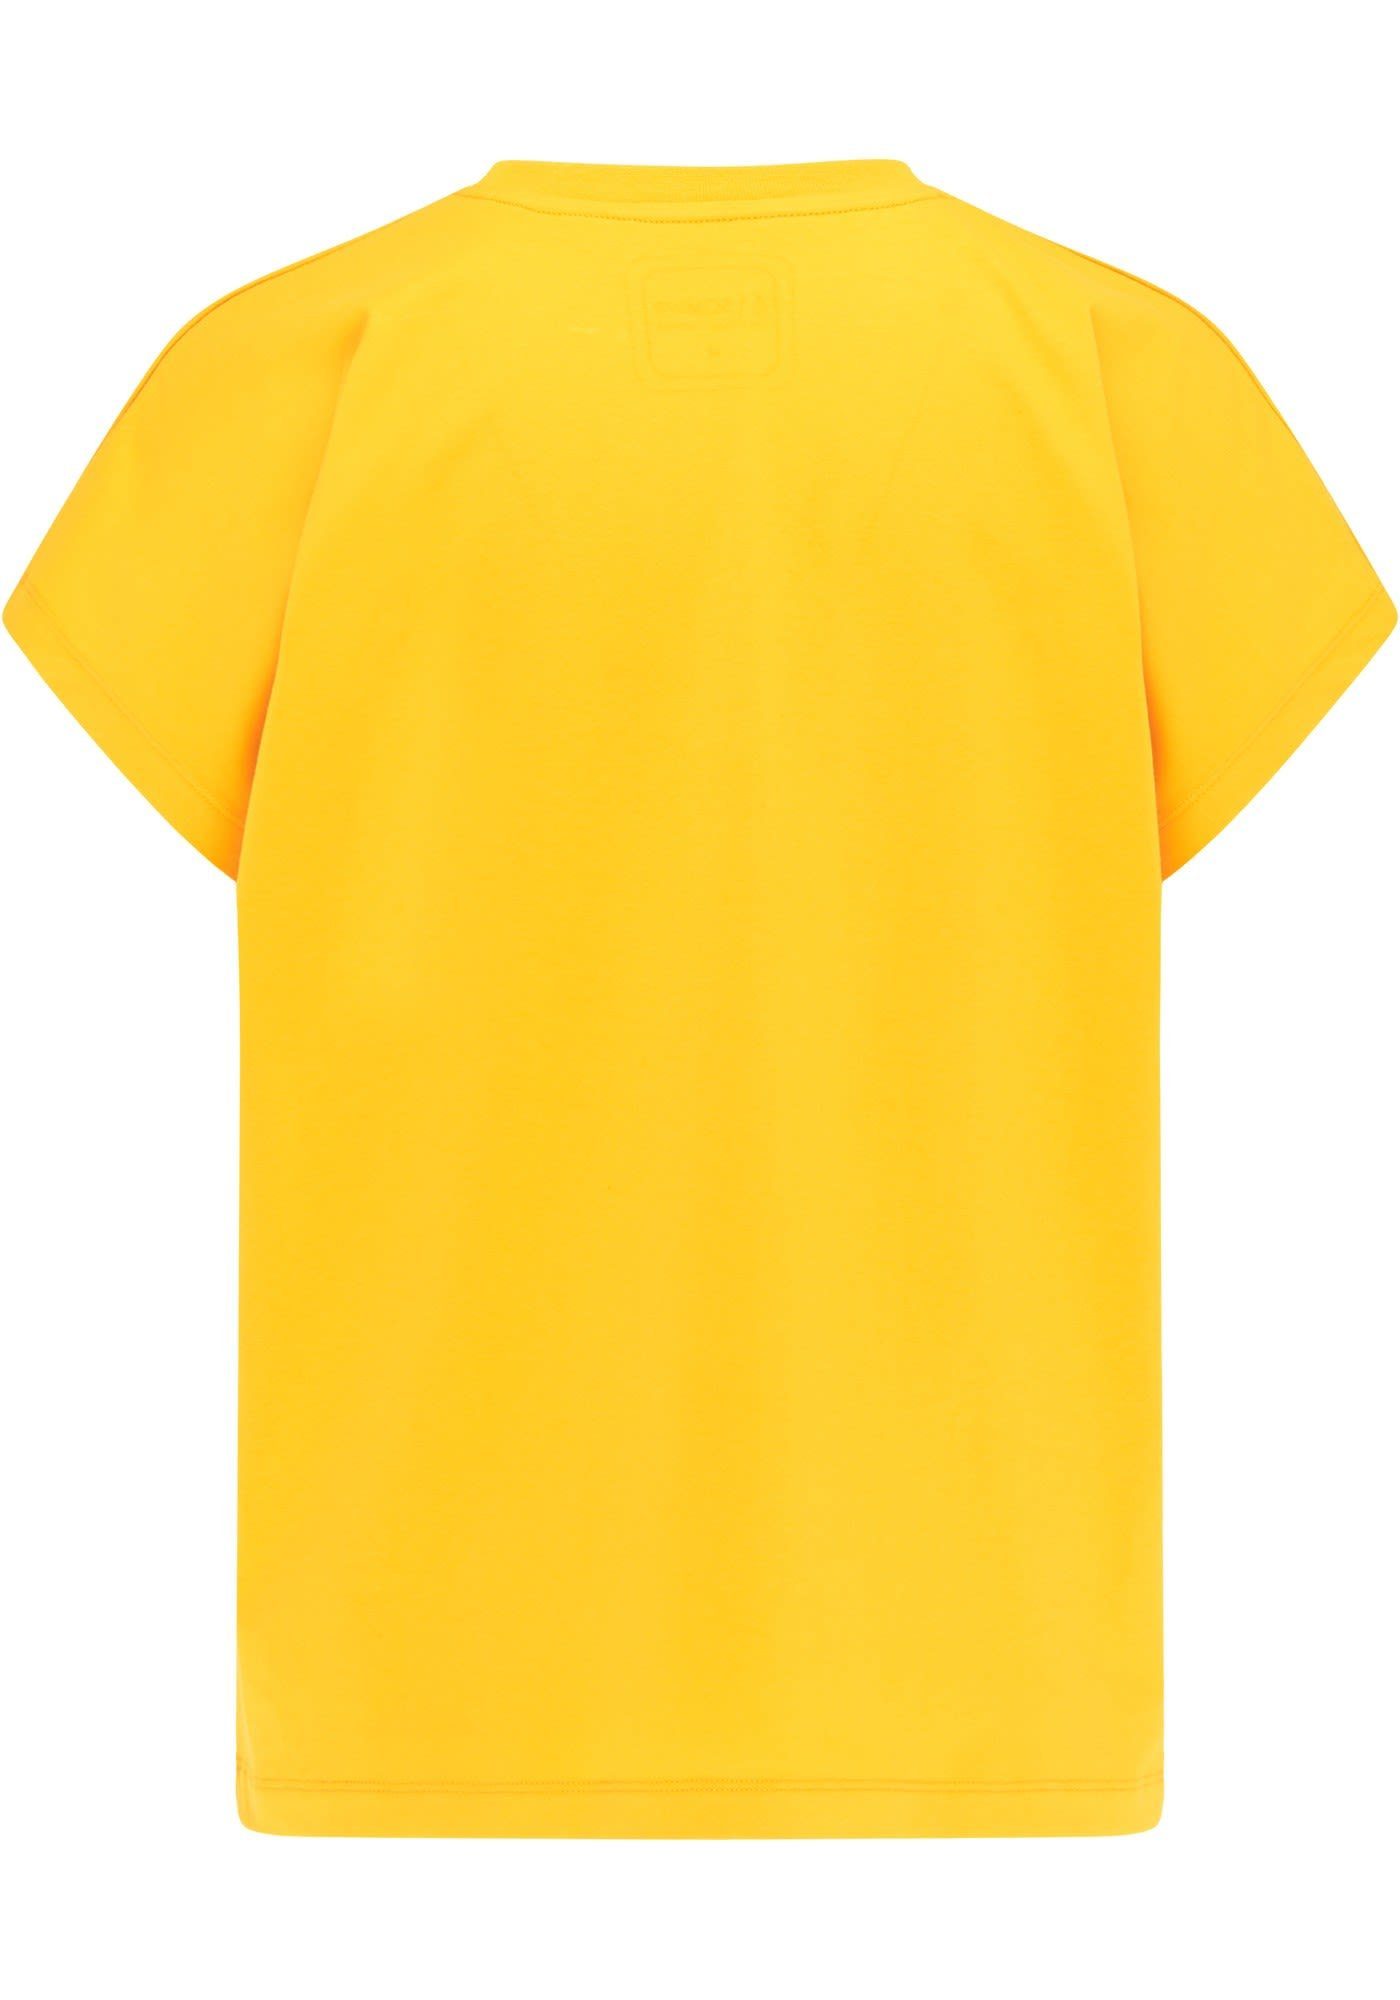 Vacant Tee Damen Saffron Kurzarm-Shirt T-Shirt W SOMWR Yellow Somwr